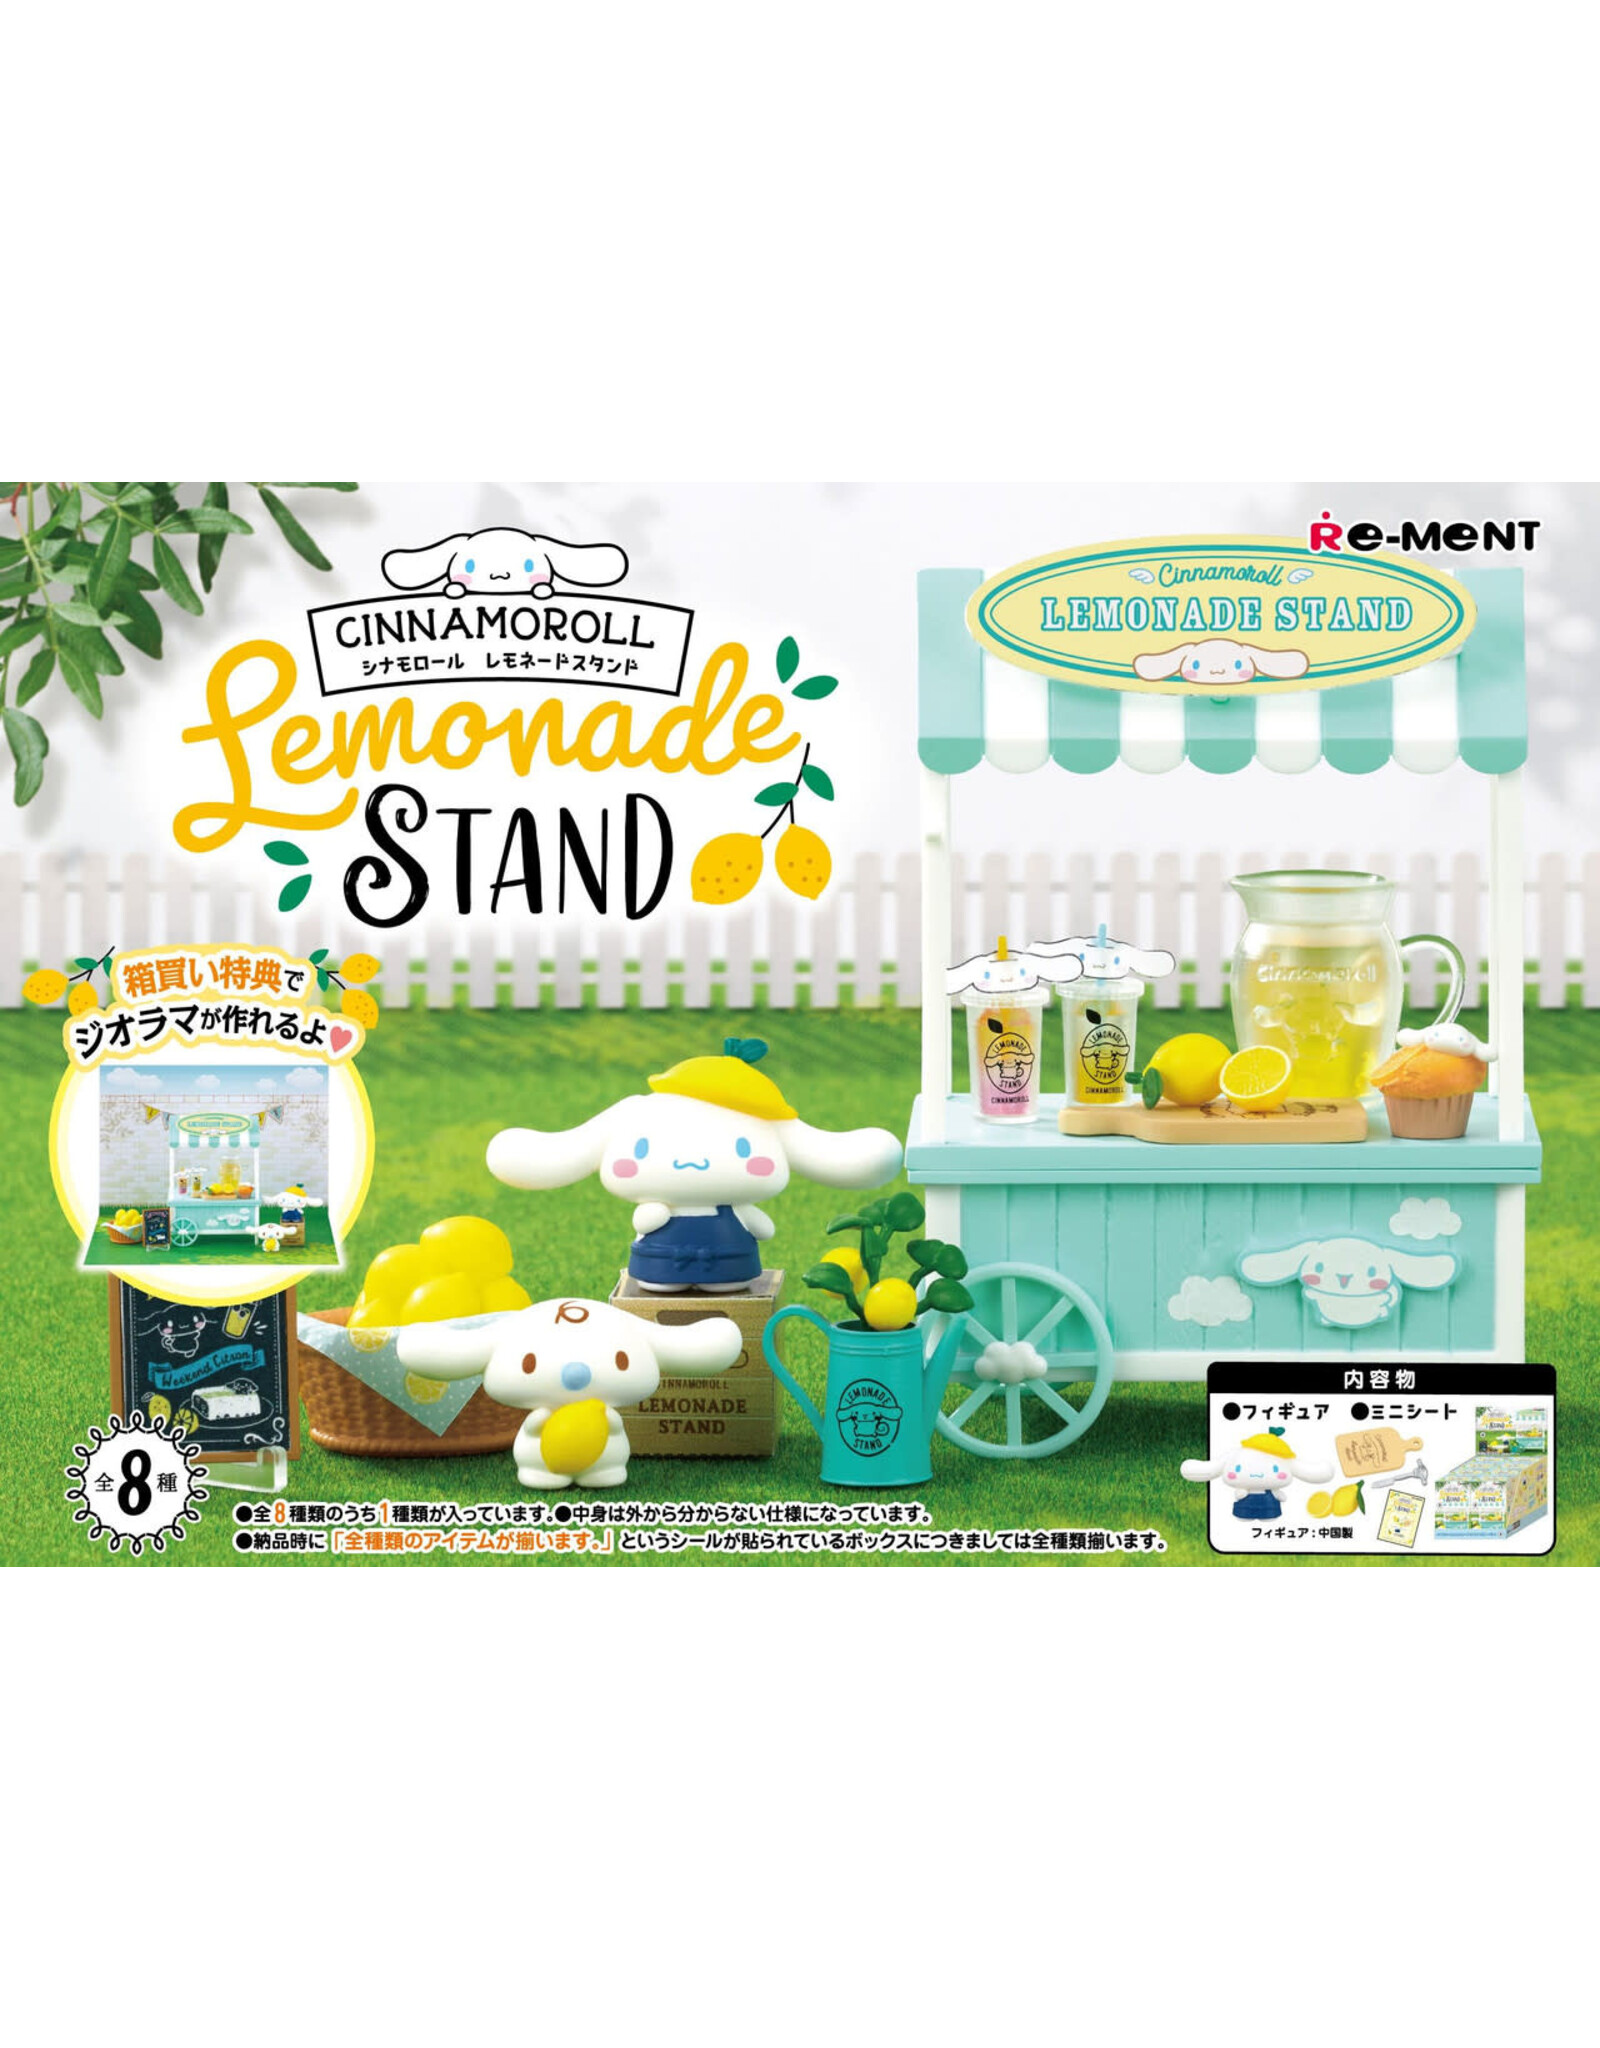 Re-Ment - Cinnamoroll - Lemonade Stand - 1 willekeurig item